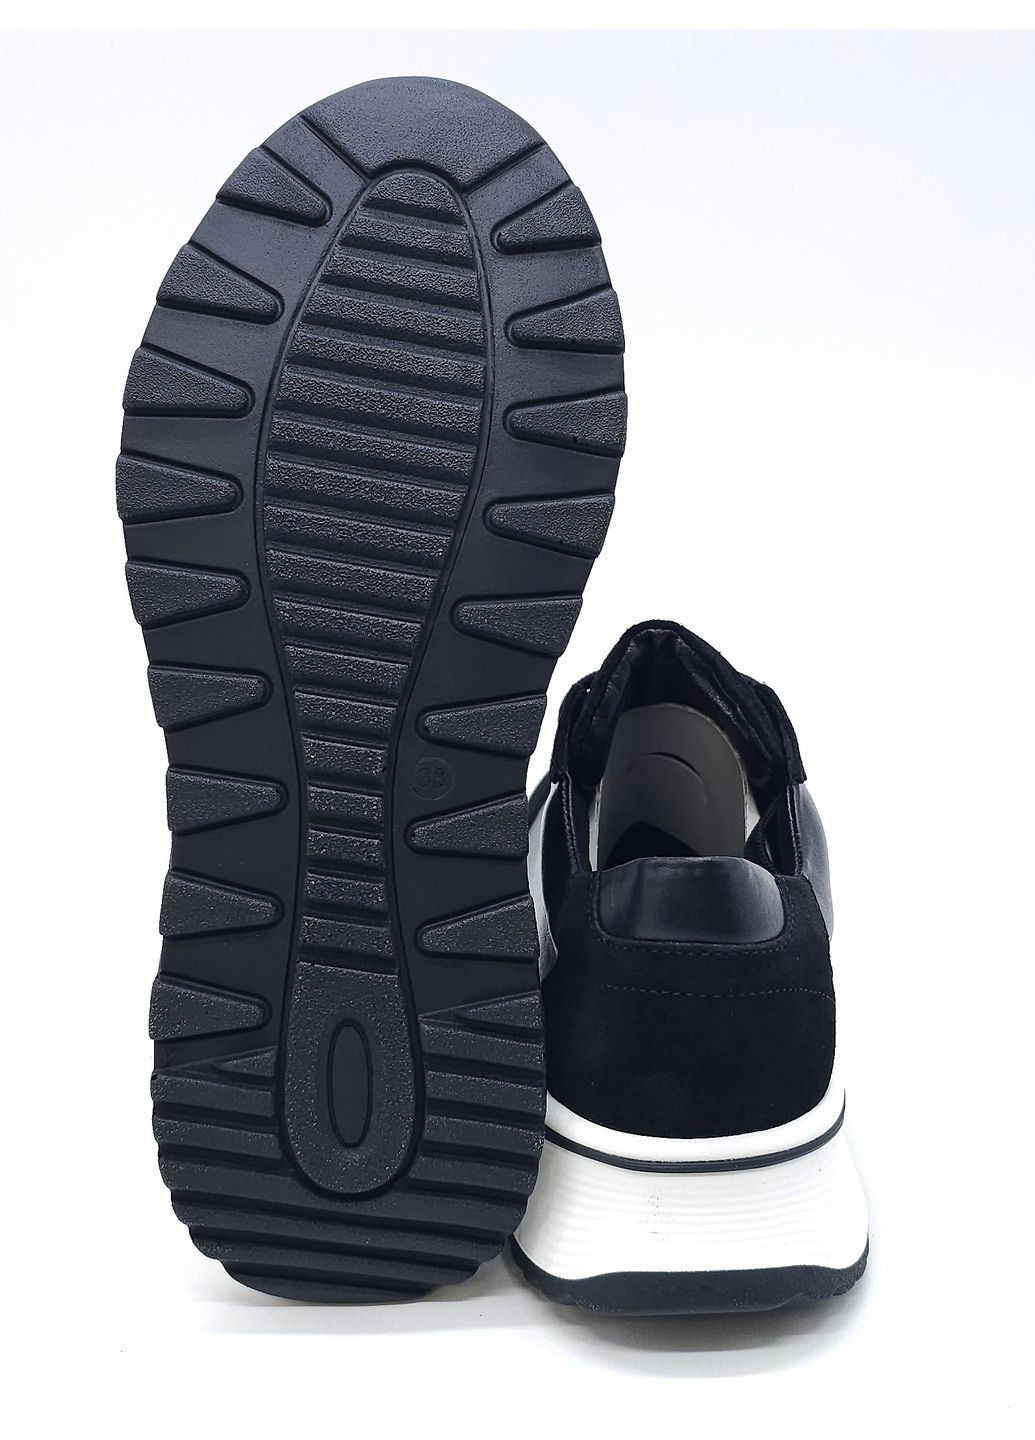 Черные всесезонные женские кроссовки черные кожаные mr-13-4 23,5 см (р) Morento